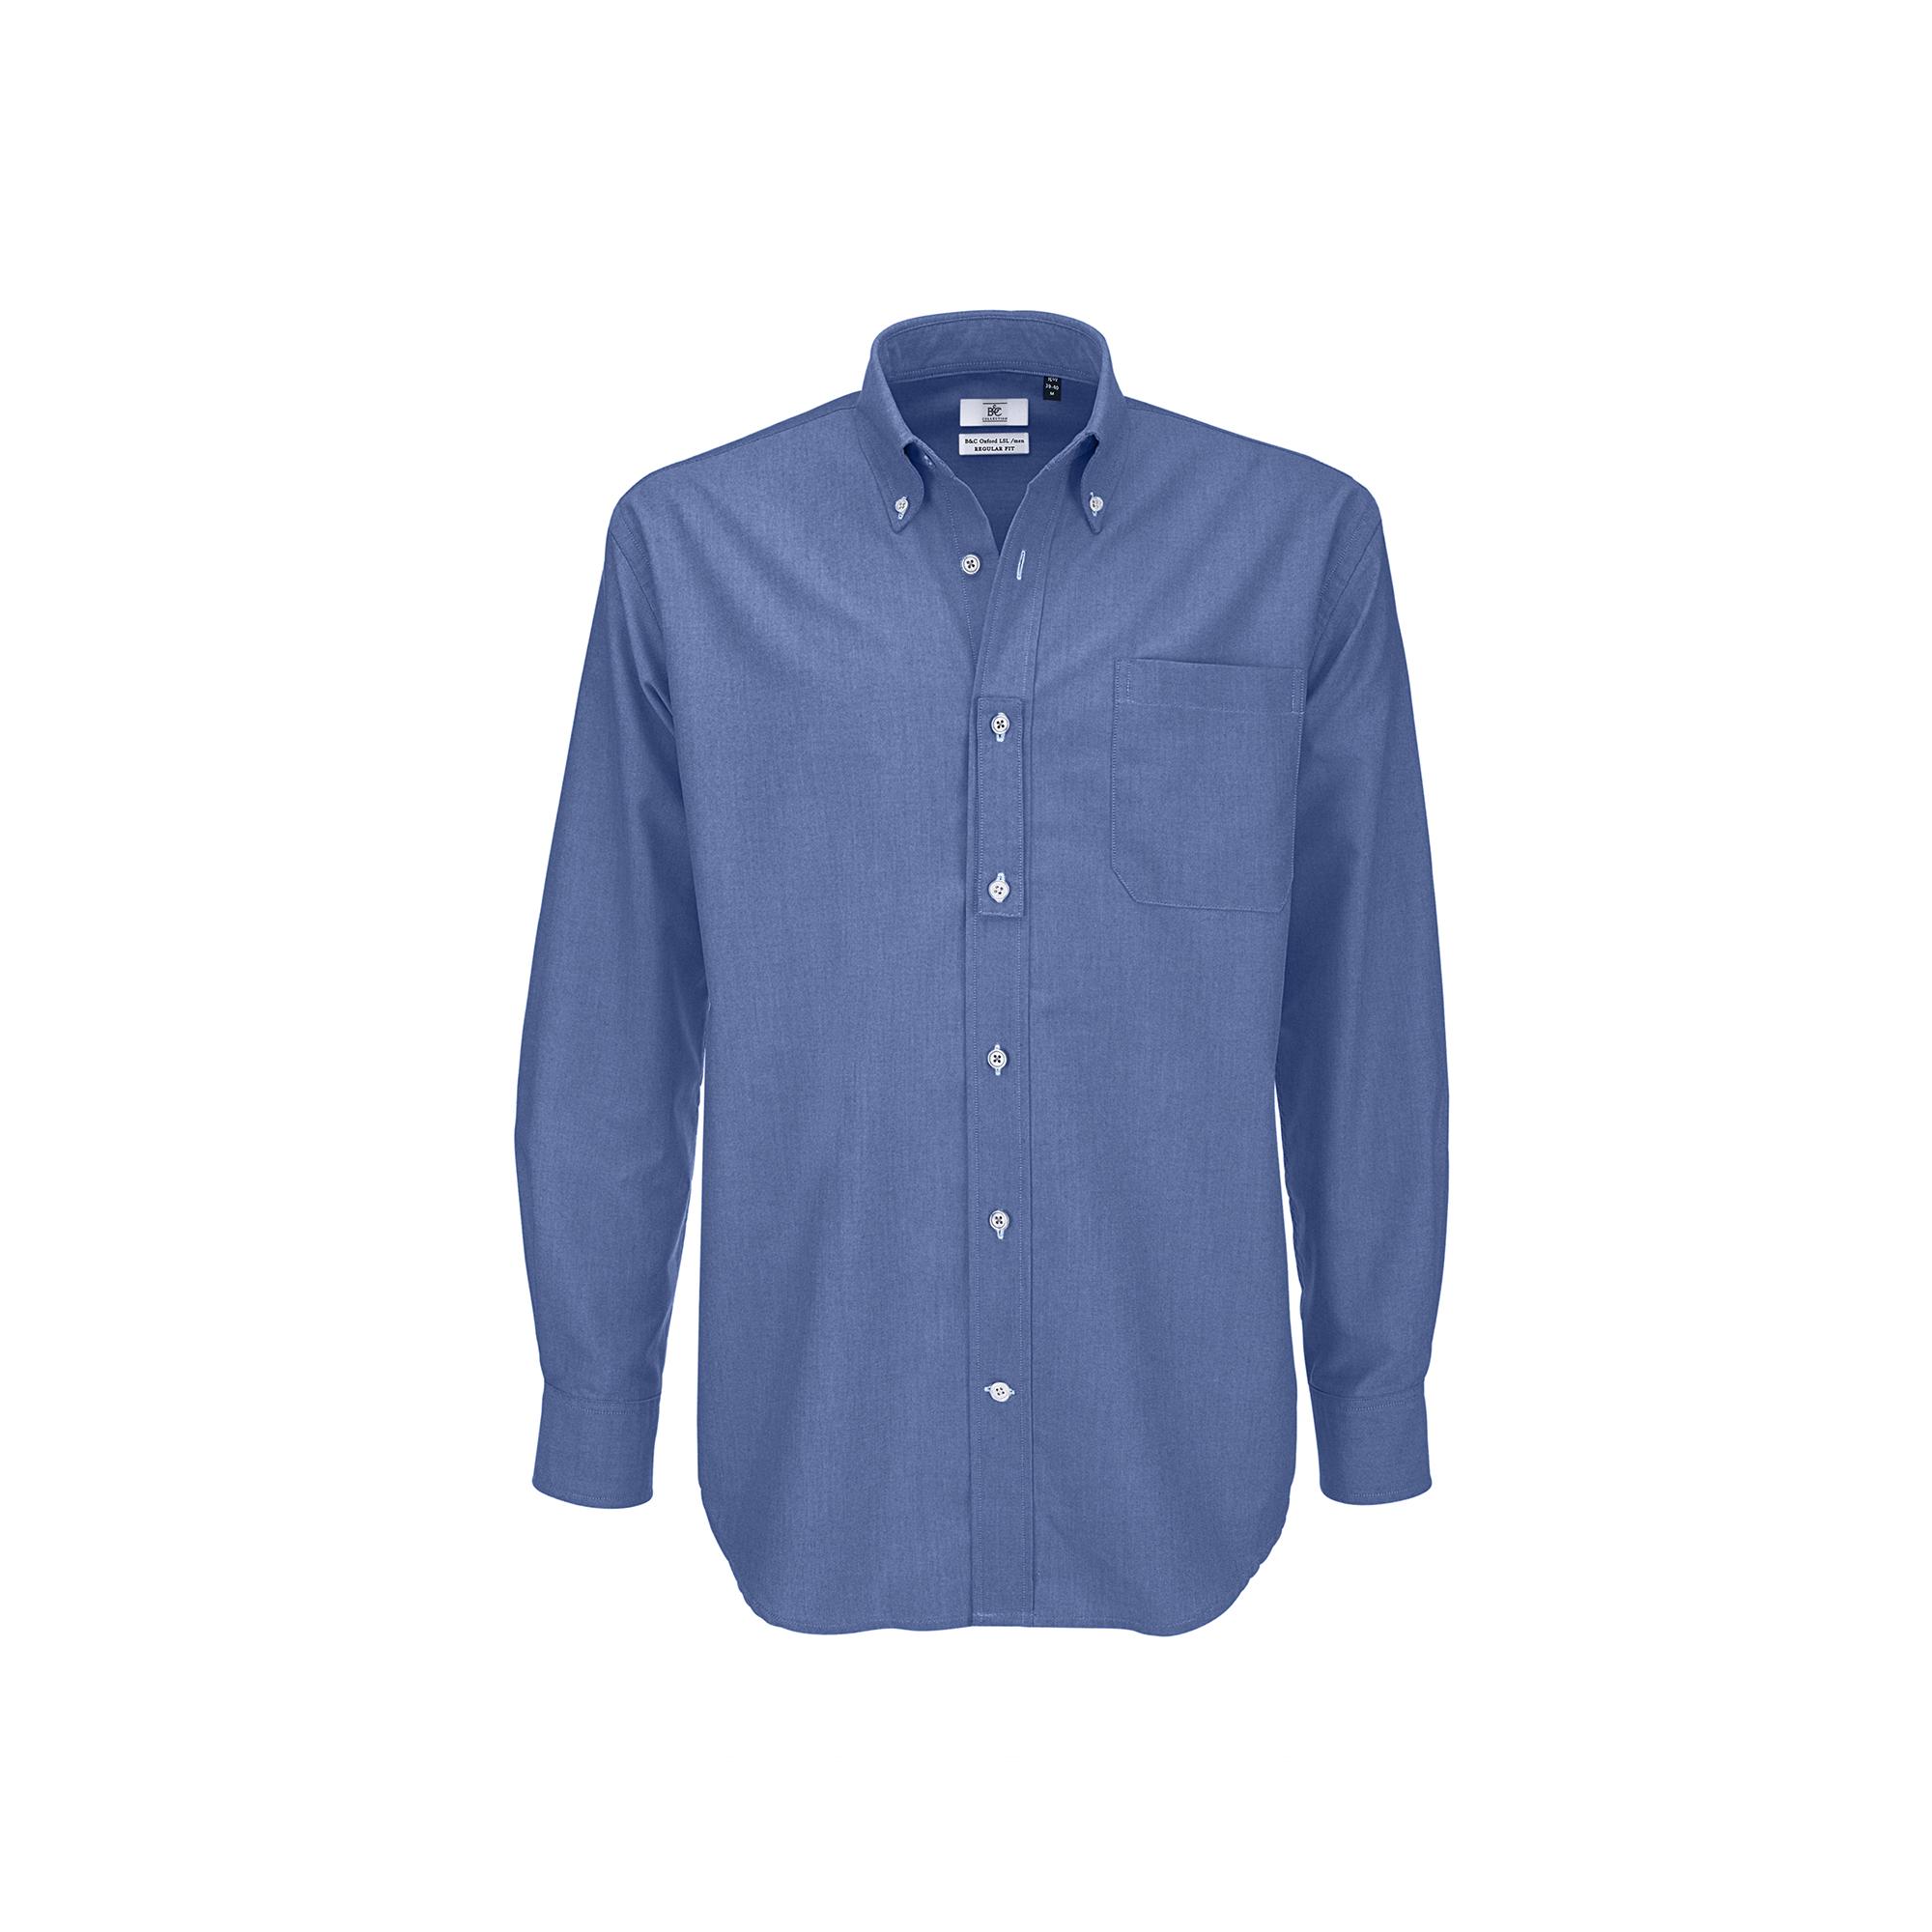 Рубашка мужская с длинным рукавом Oxford LSL/men, цвет синий, фото 1